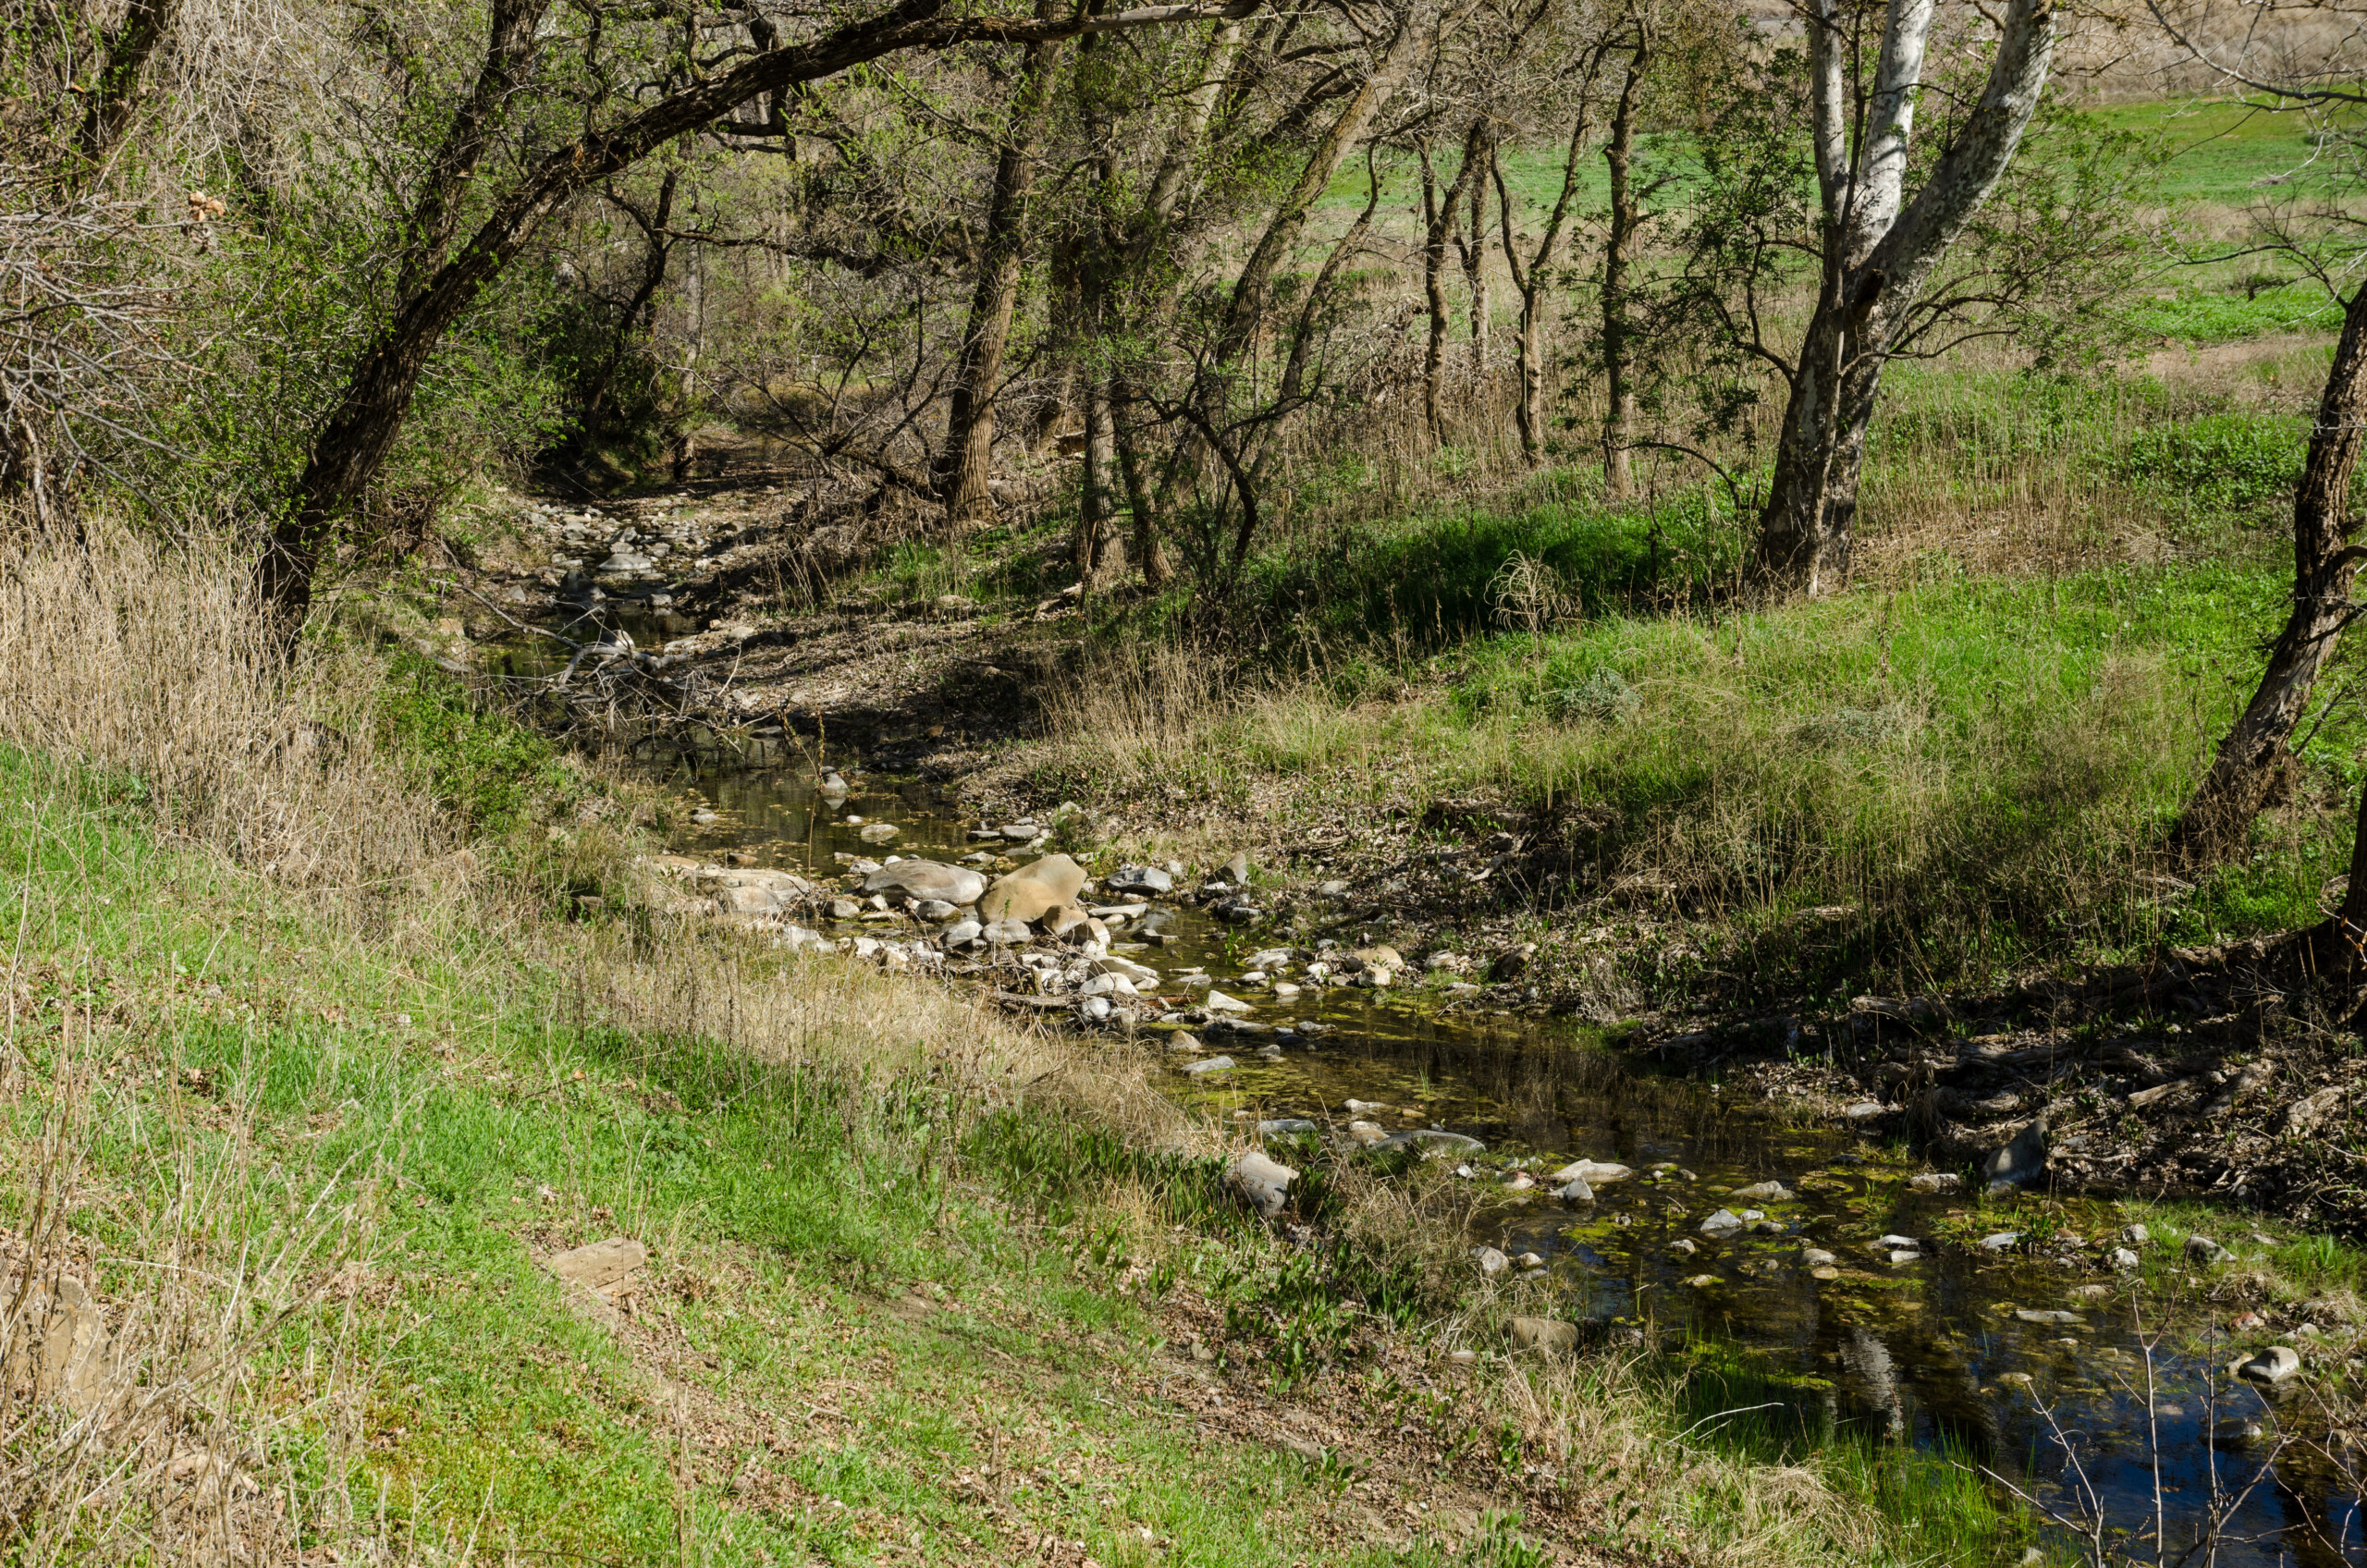 The lush green Big Bend area of Marsh Creek